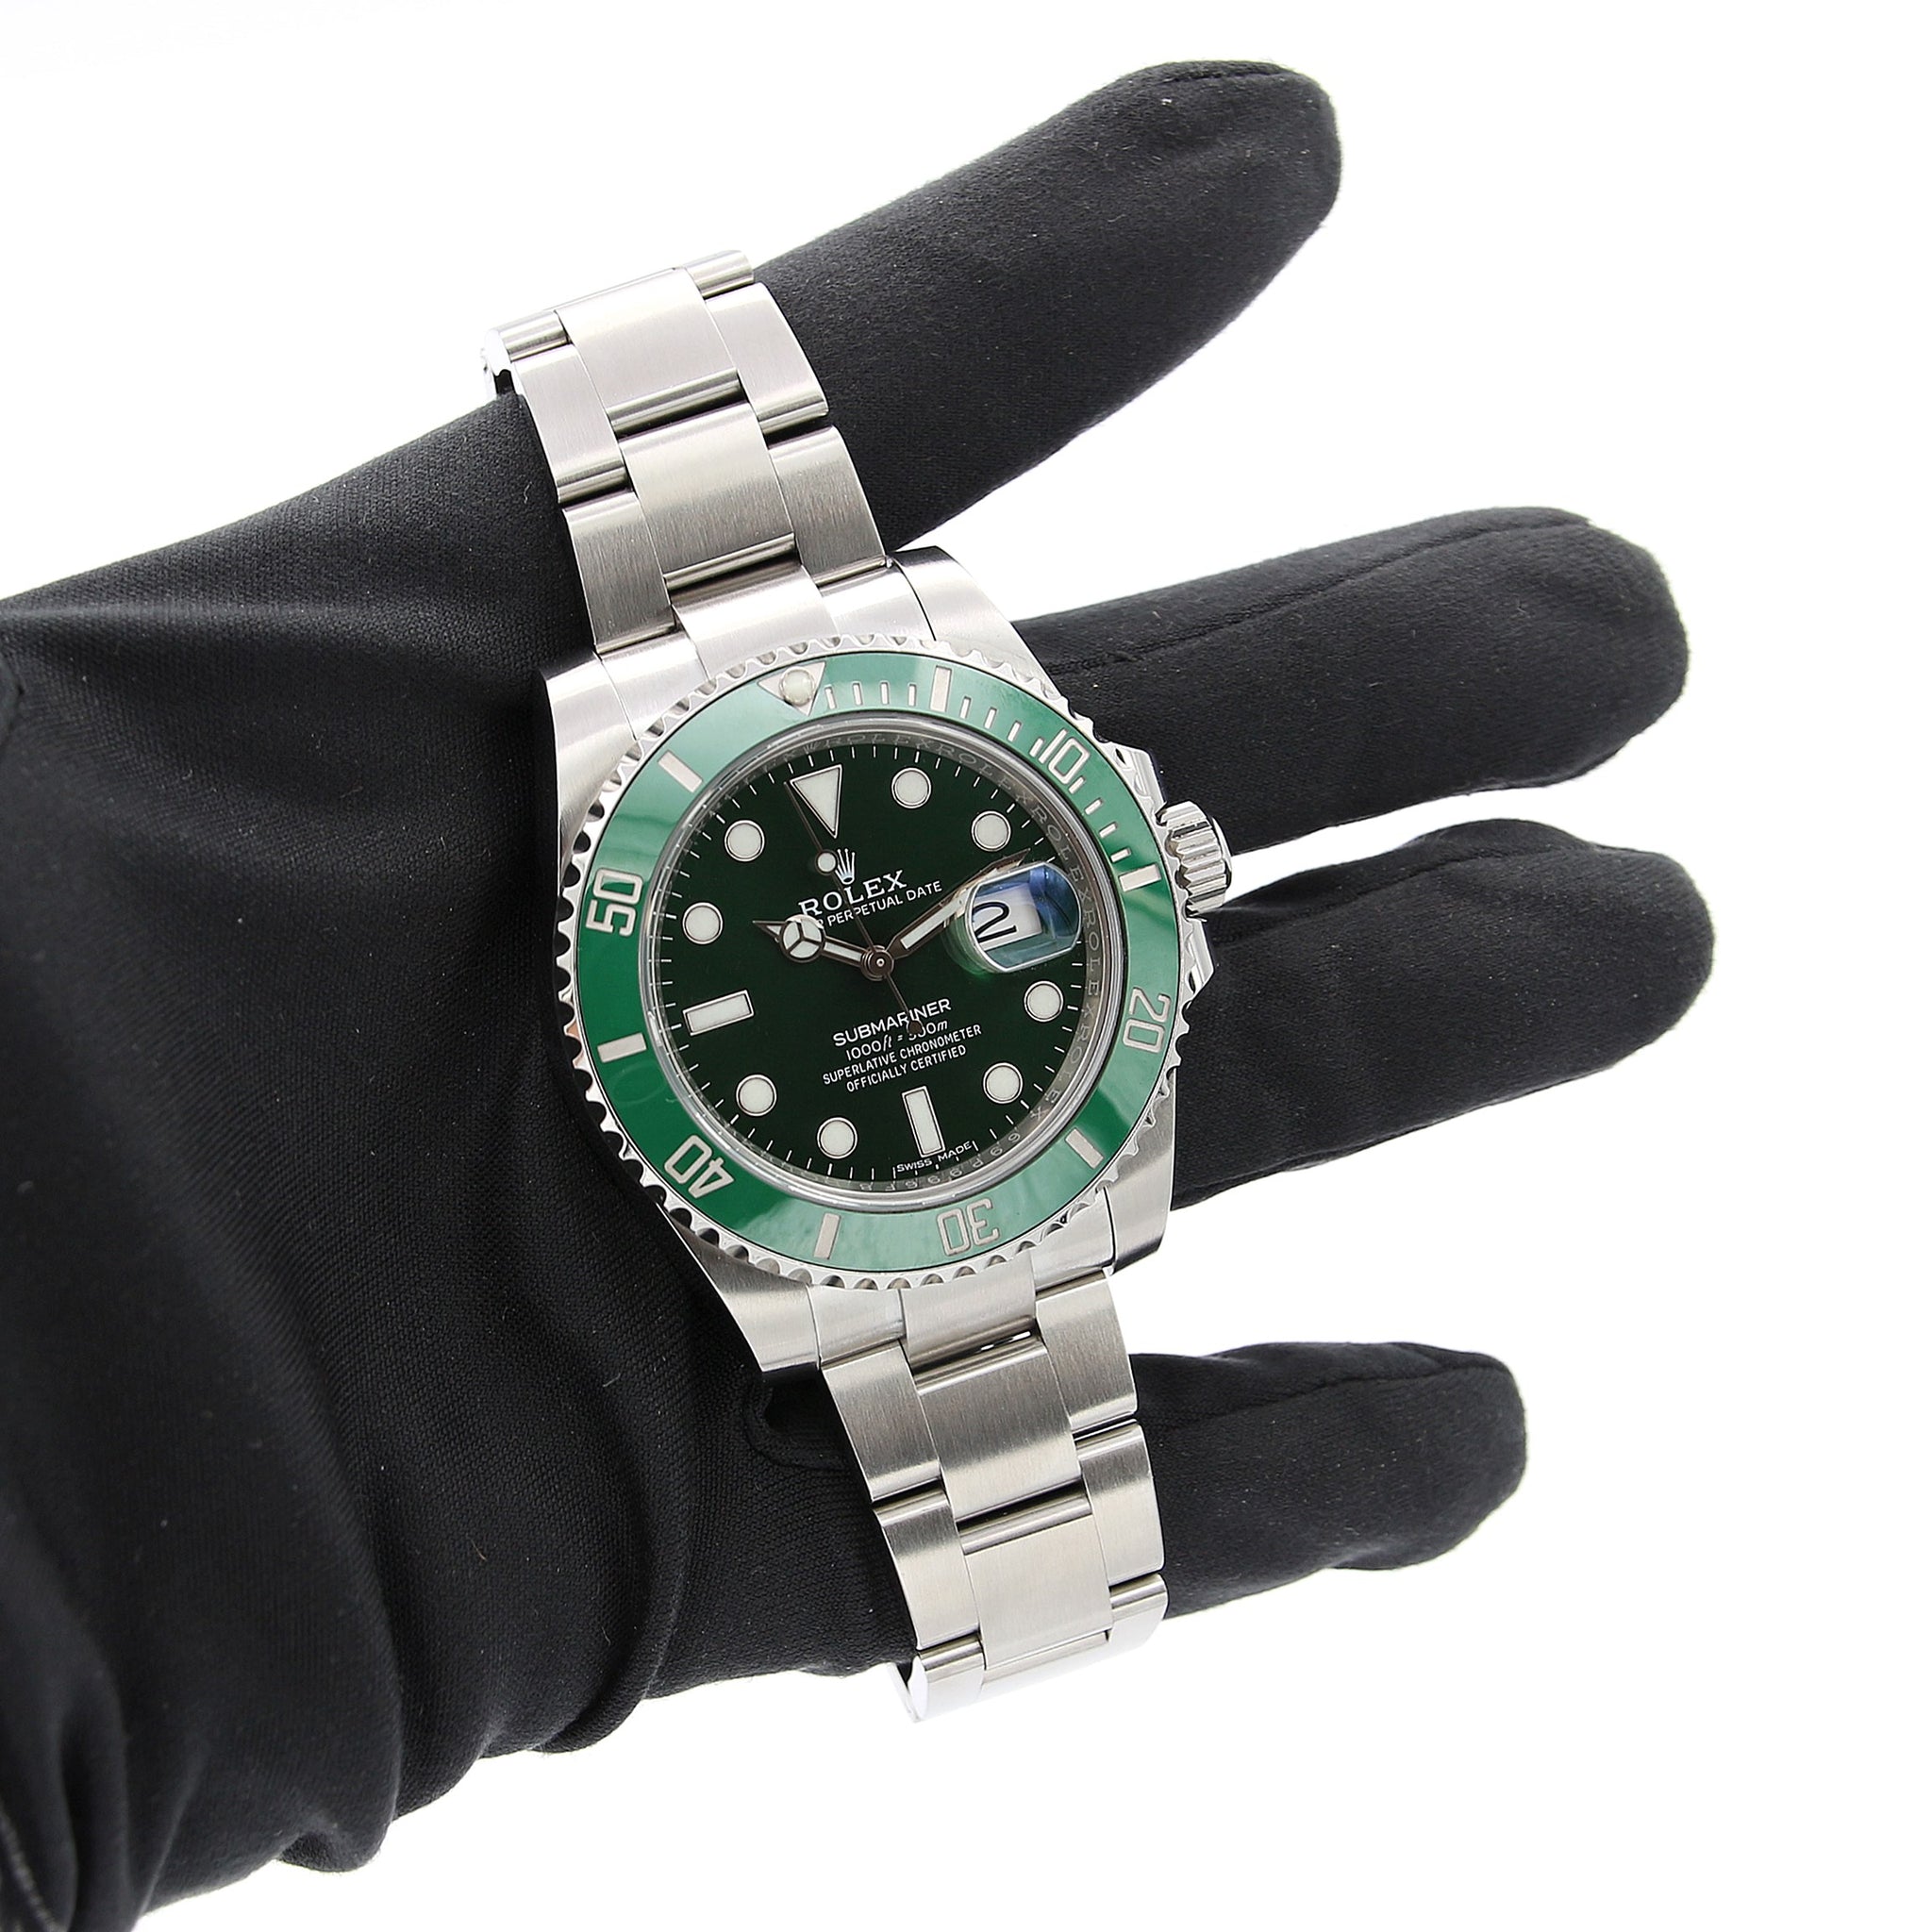 rolex submariner 116610lv watch